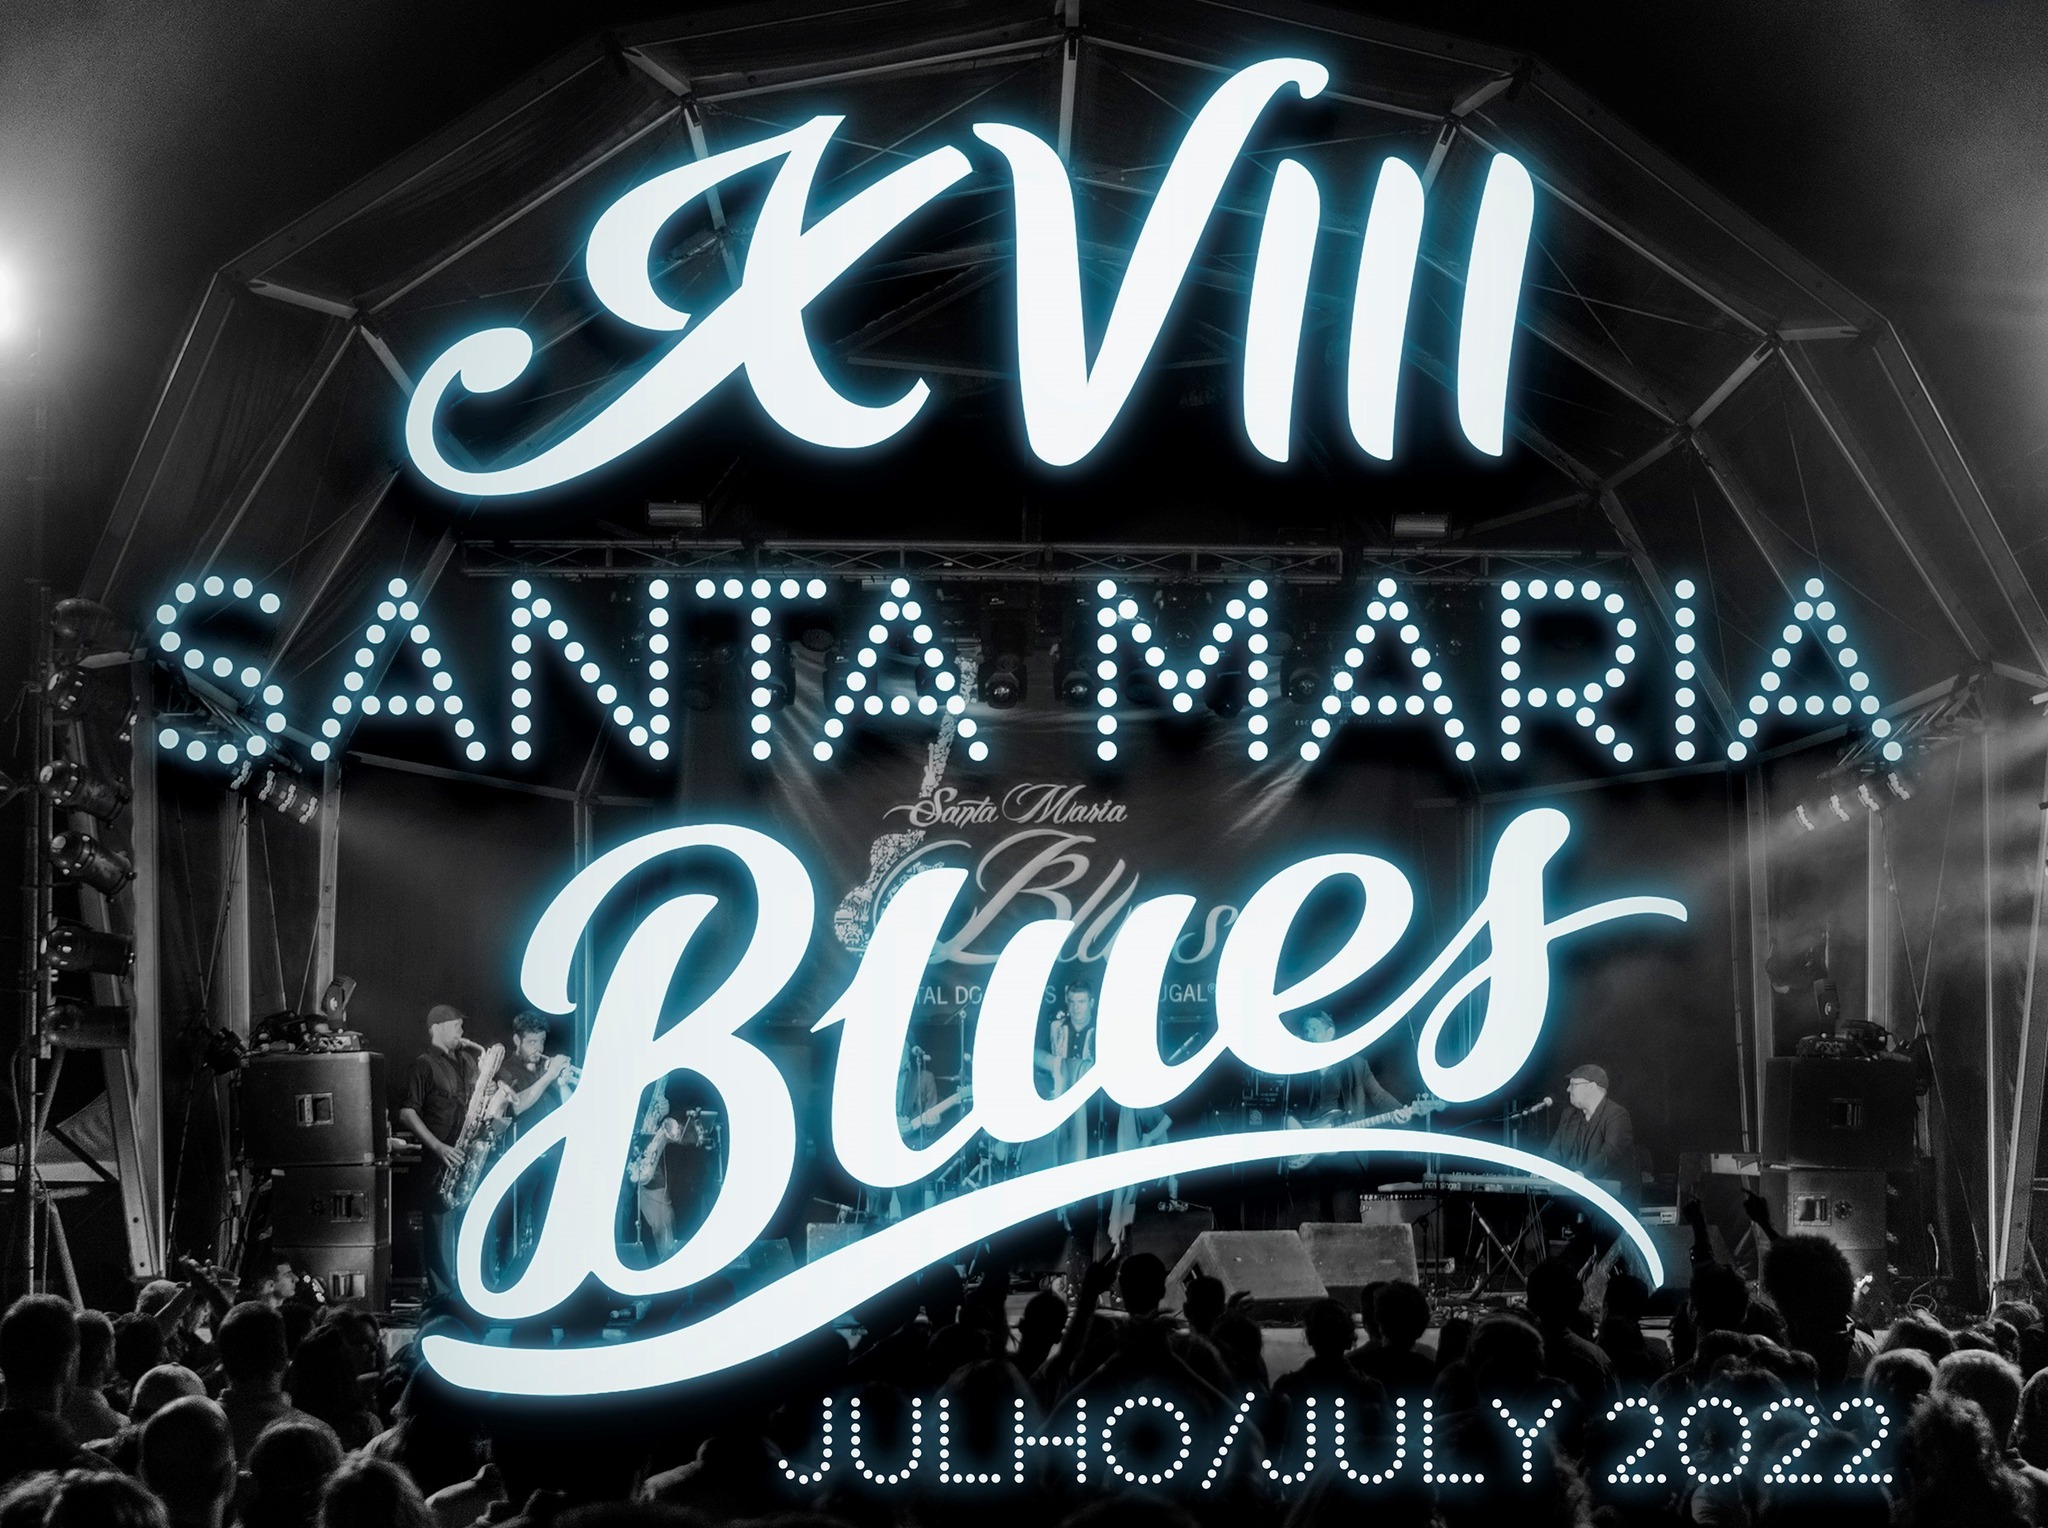 Santa Maria Blues 2022